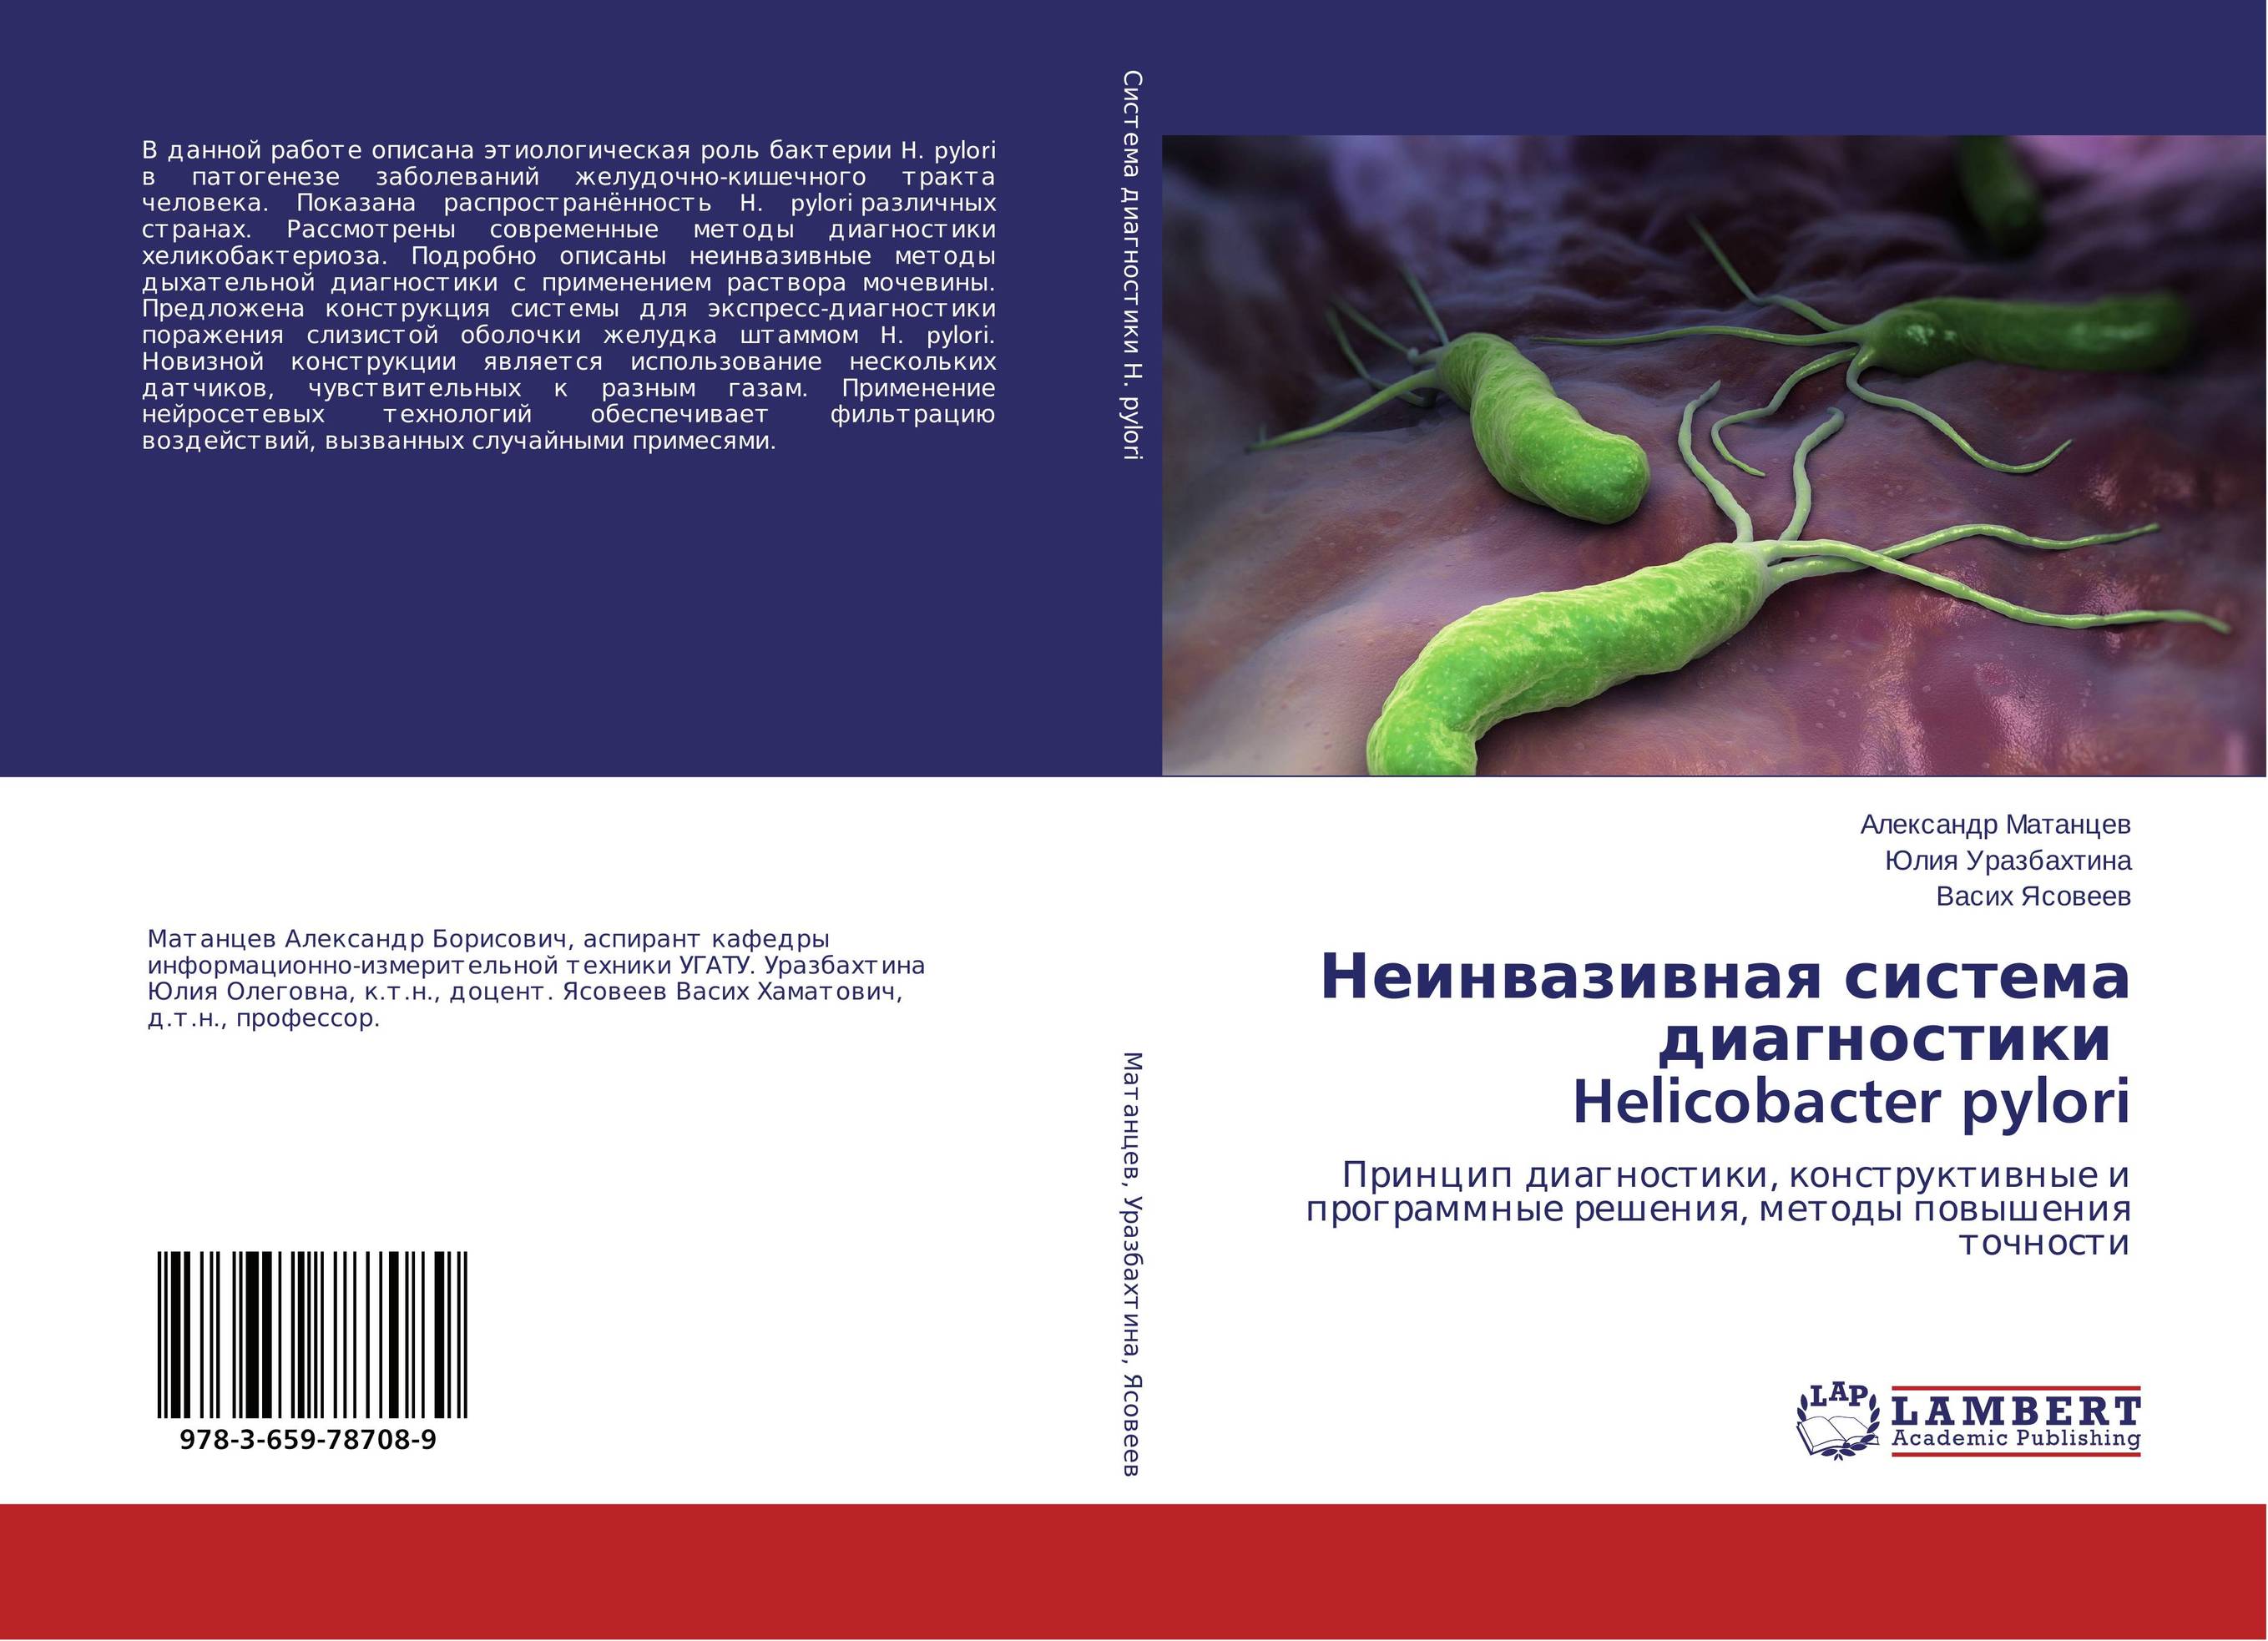 
        Неинвазивная система диагностики Helicobacter pylori. Принцип диагностики, конструктивные и программные решения, методы повышения точности.
      